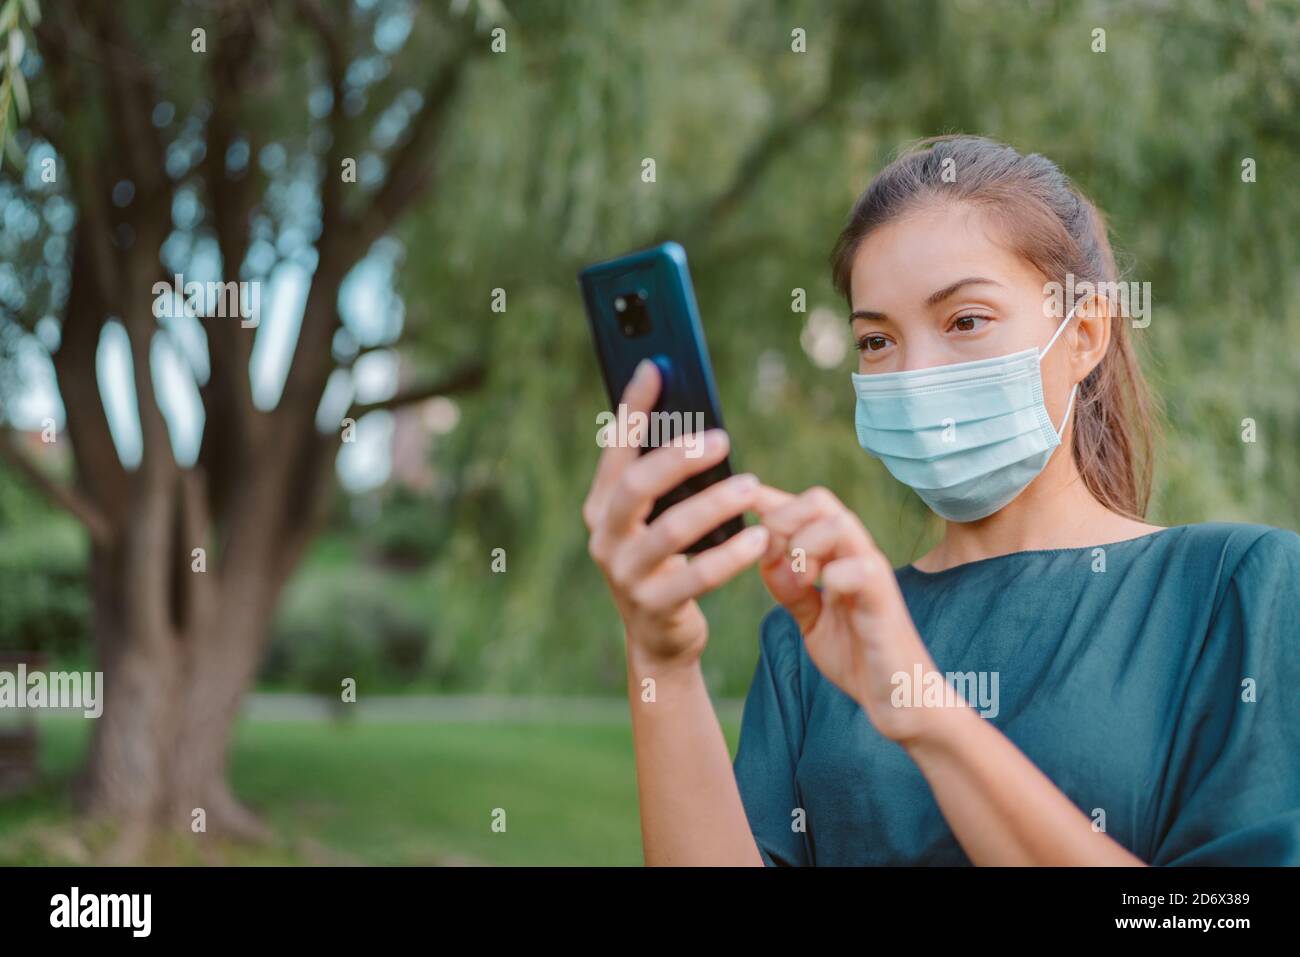 Femme portant un masque facial utilisant un téléphone mobile pour l'application de recherche de contact tout en marchant à l'extérieur pendant une pandémie de coronavirus. Gens ville style de vie Banque D'Images